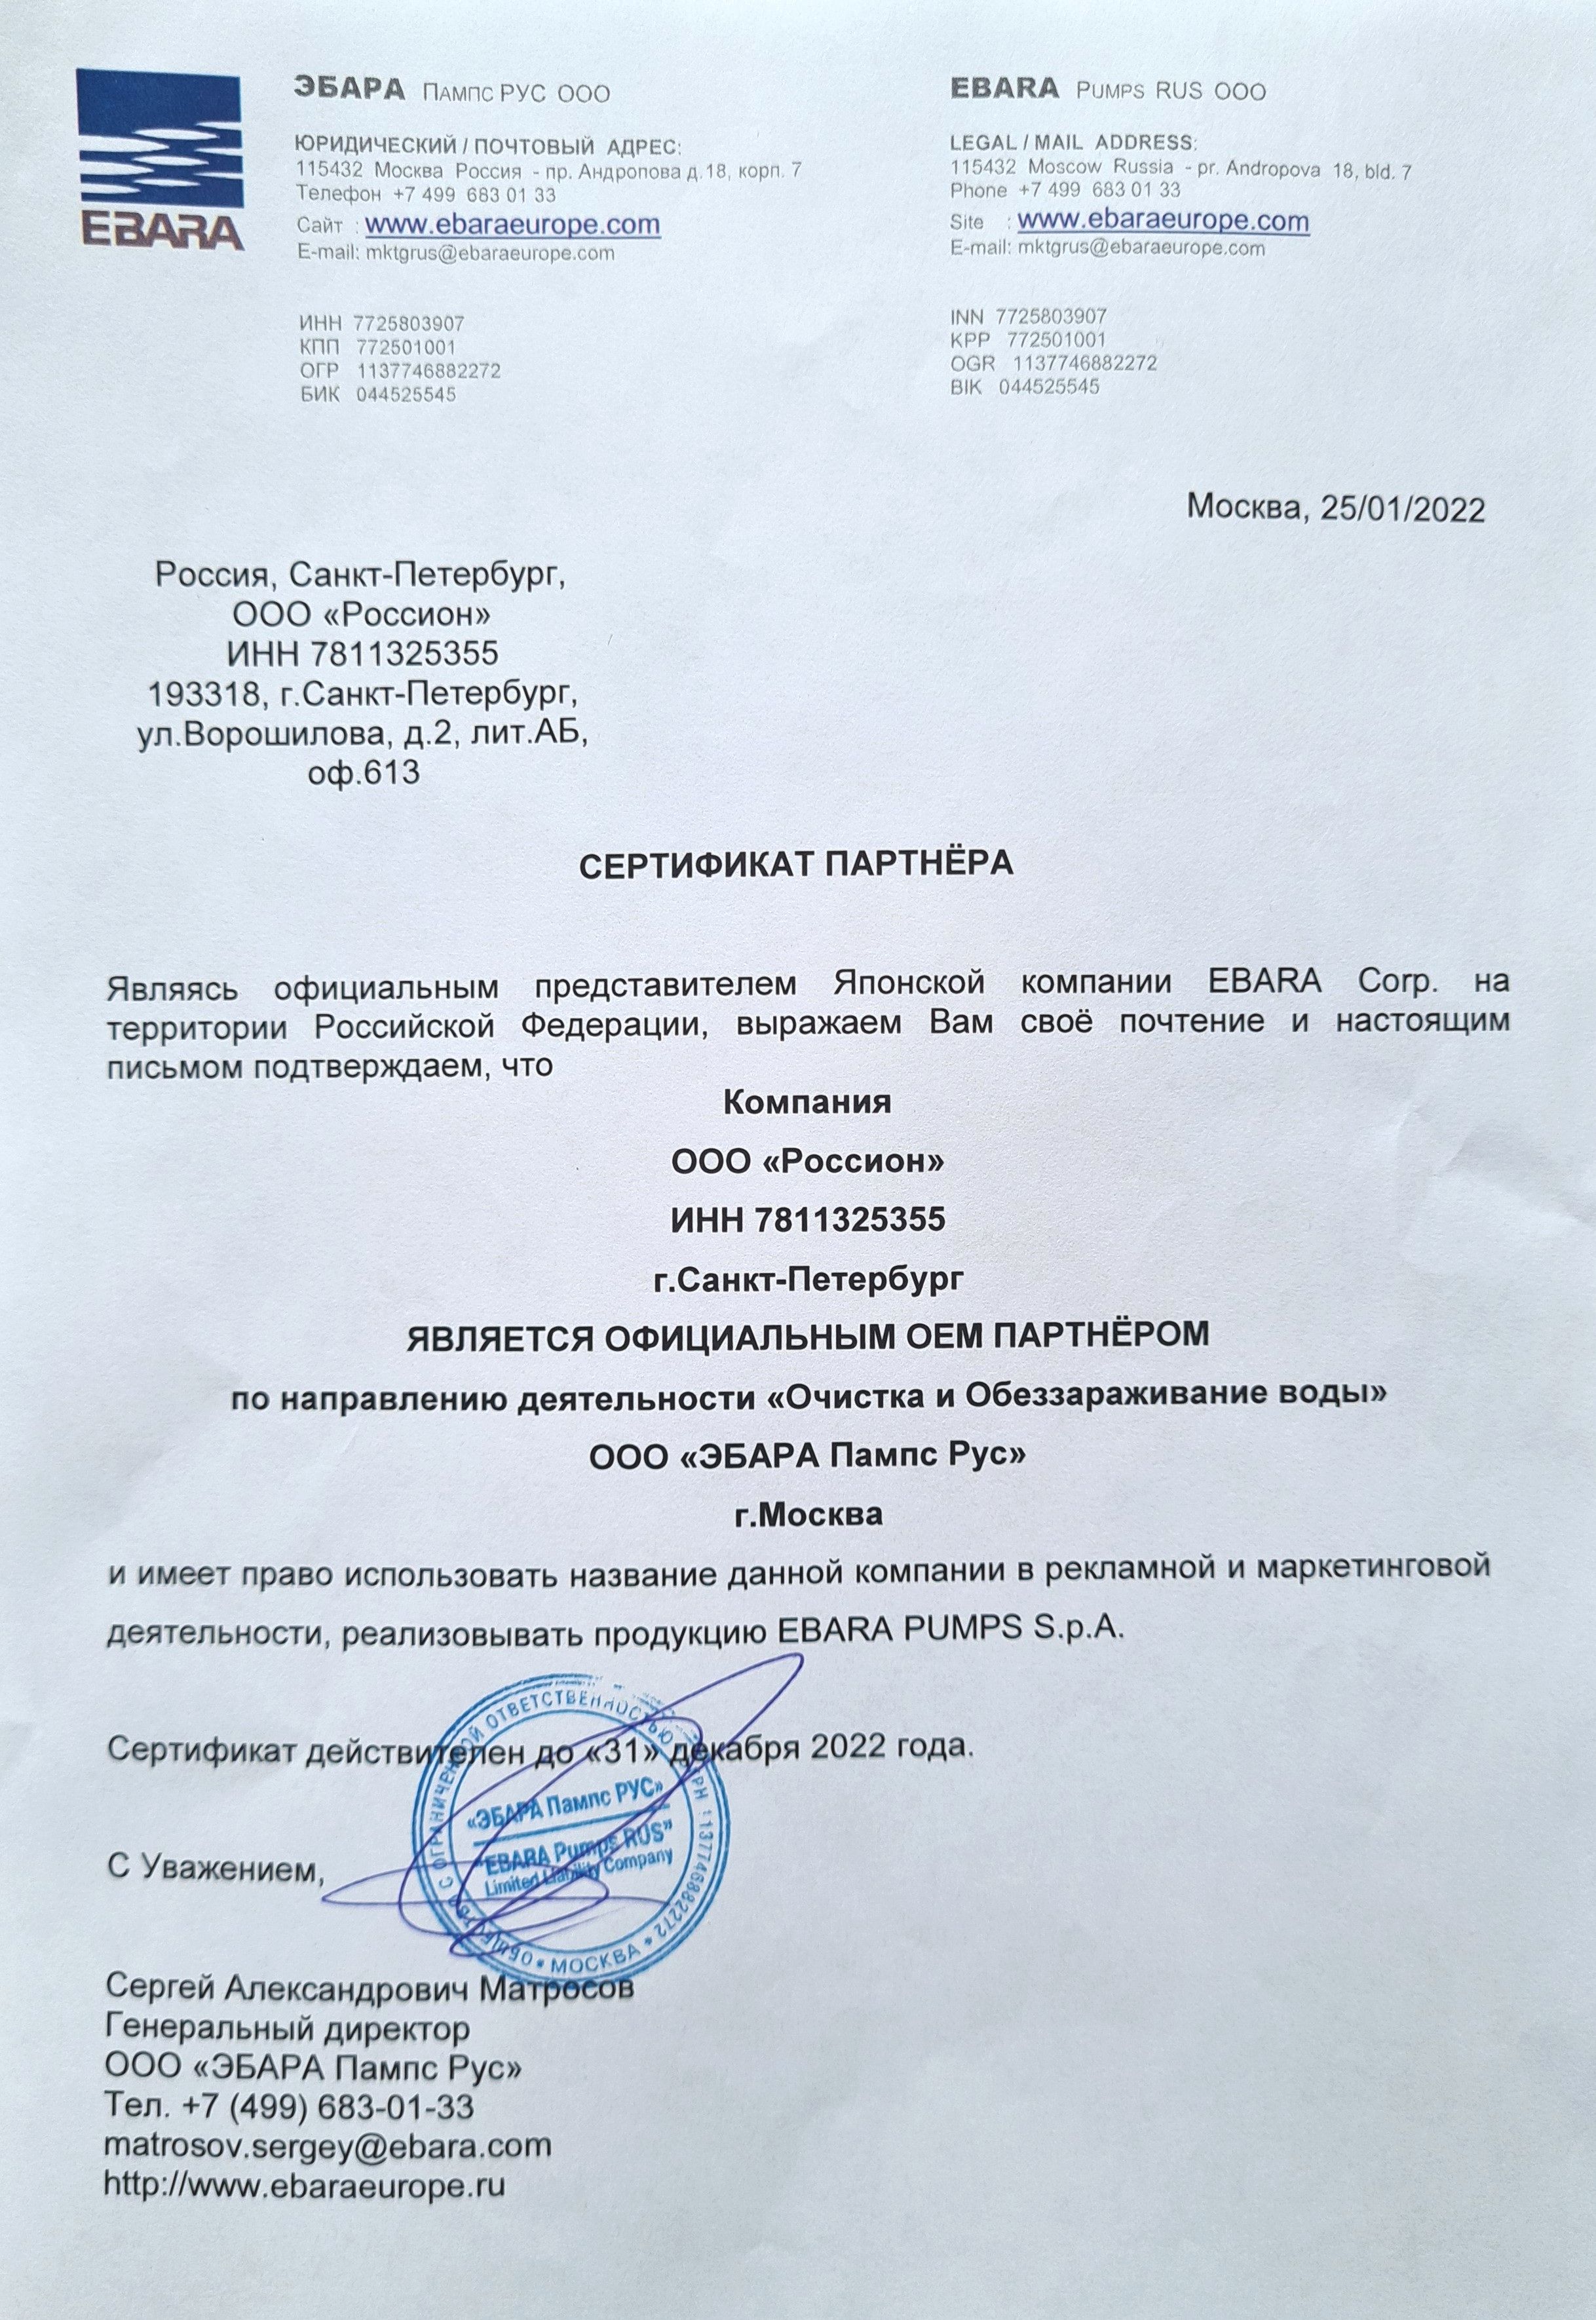 Сертификат партнера ООО «ЭБАРА Пампс Рус»